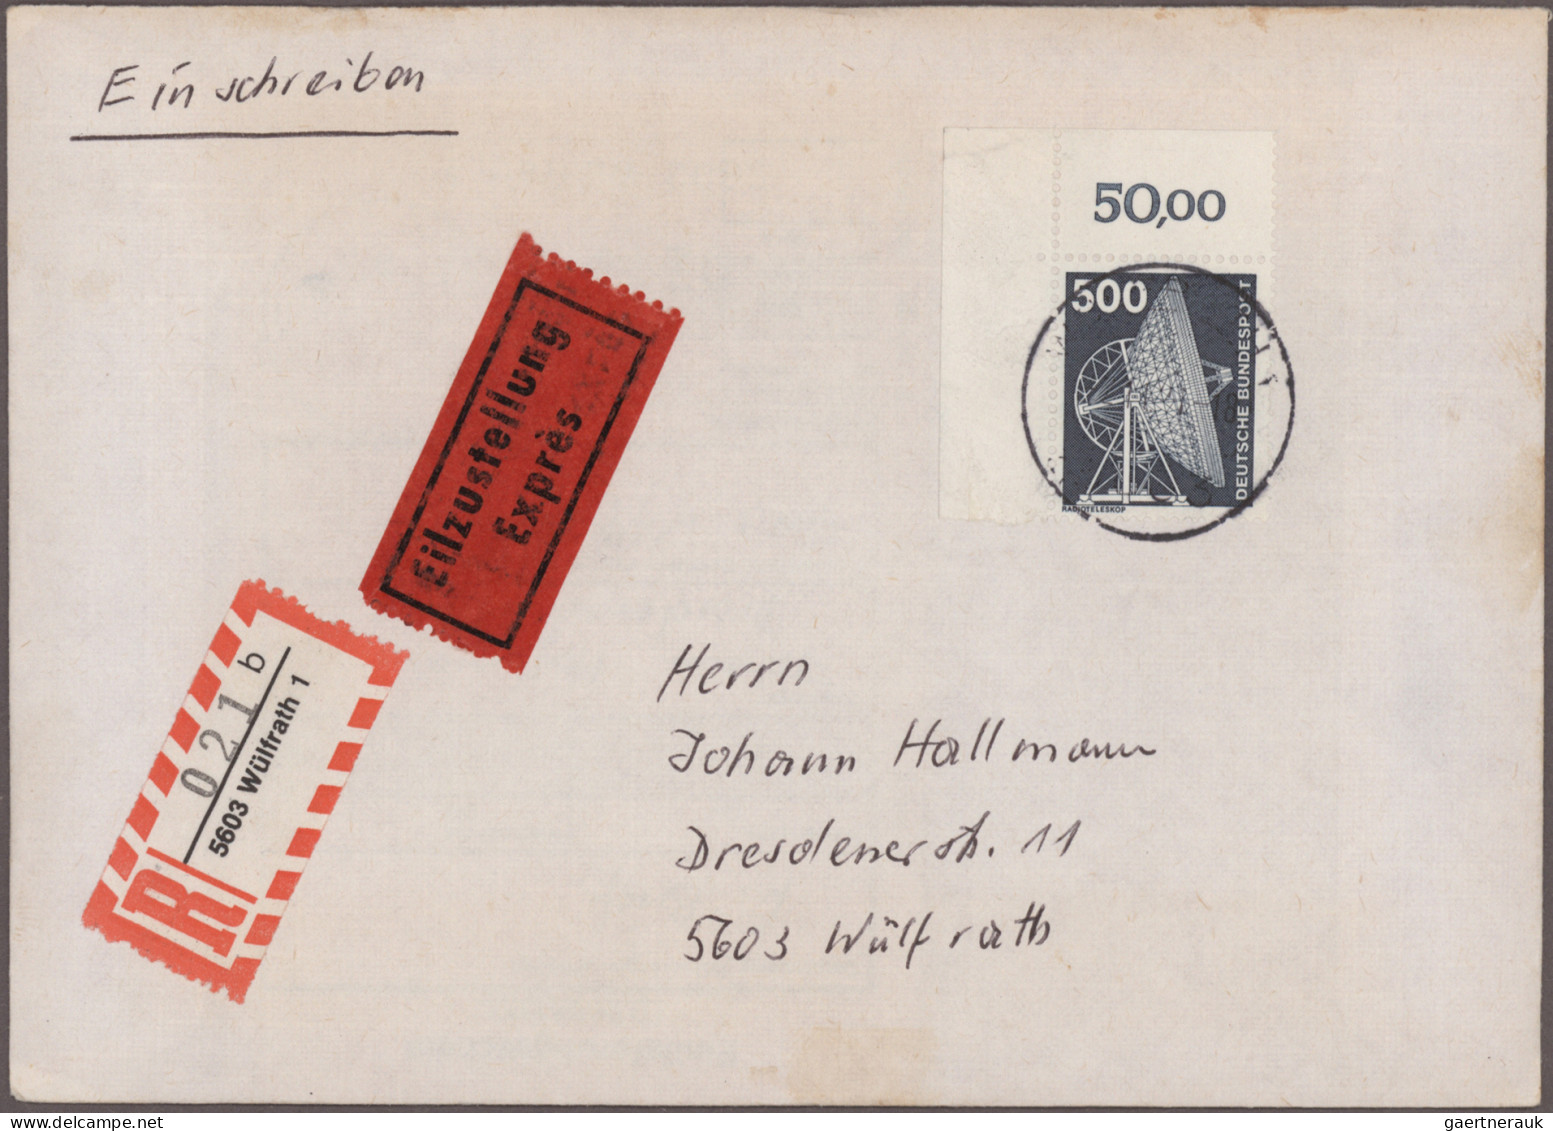 Nachlässe: Gewaltiger Posten Briefe Und Karten "Nachkriegsdeutschland" Mit Siche - Lots & Kiloware (mixtures) - Min. 1000 Stamps